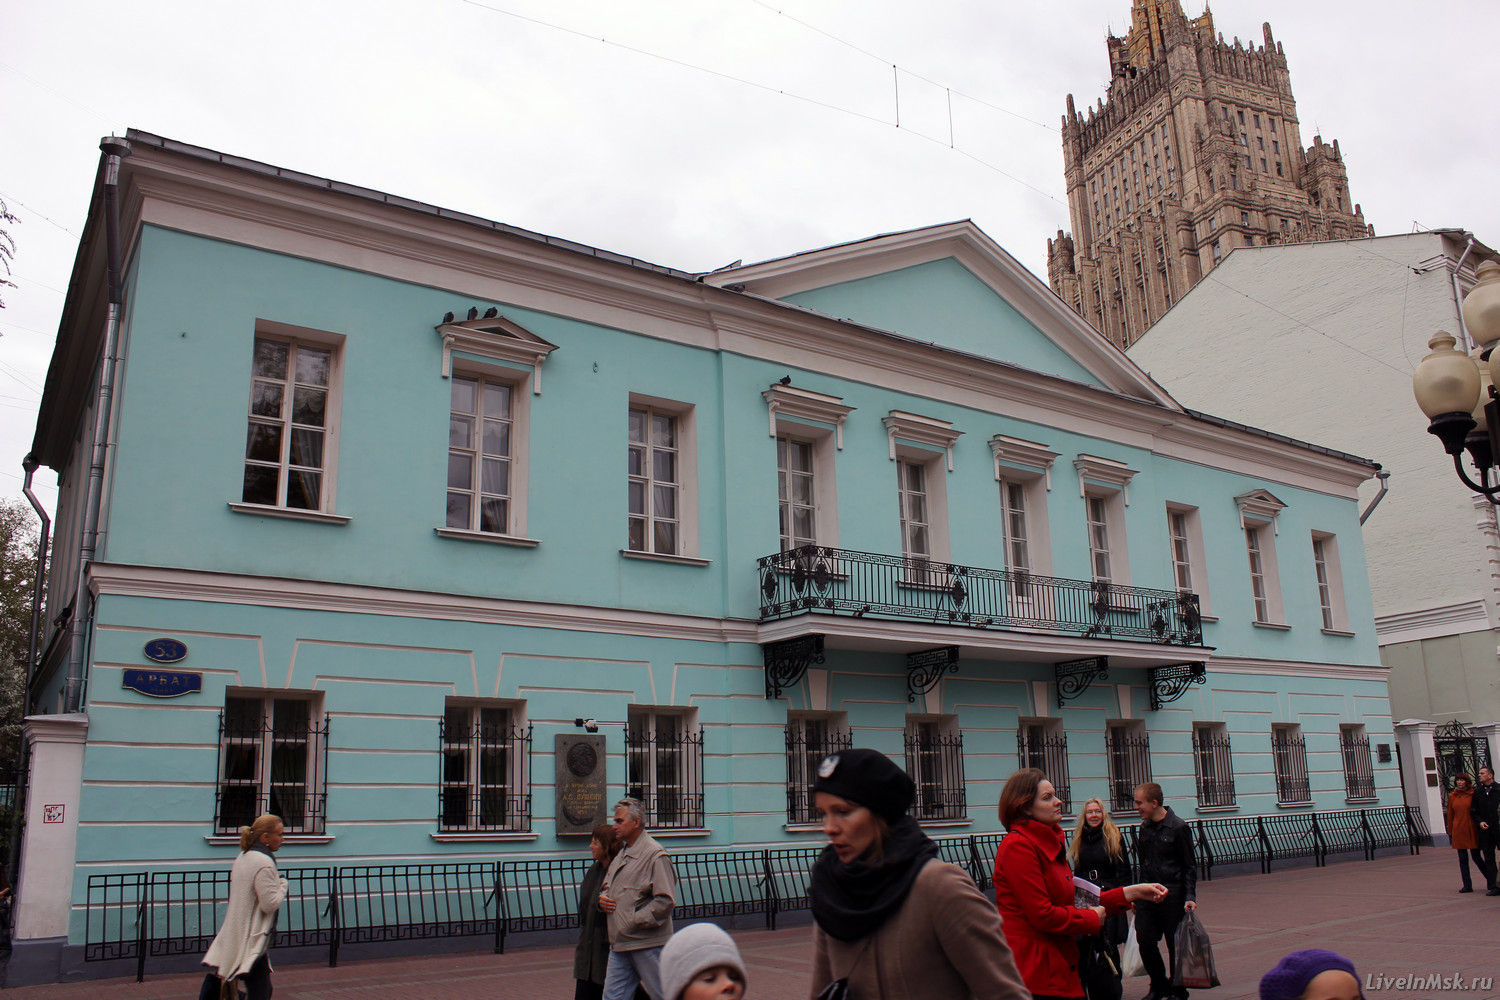 Мемориальная квартира Пушкина на Арбате, фото 2015 года